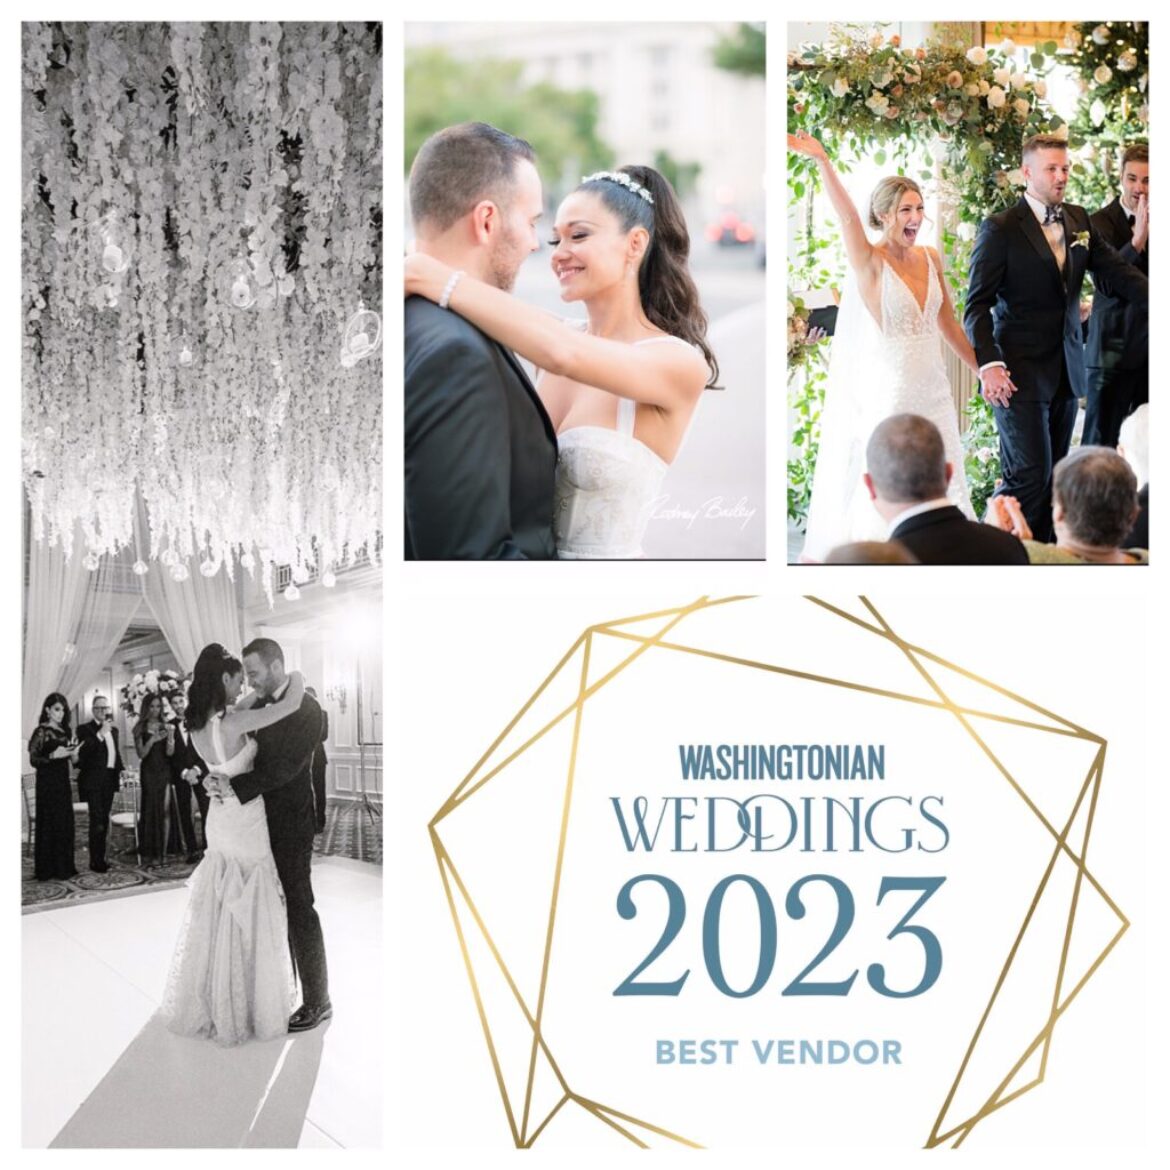 Best Wedding Photographer Vendor in Washington DC Washingtonian Weddings Magazine